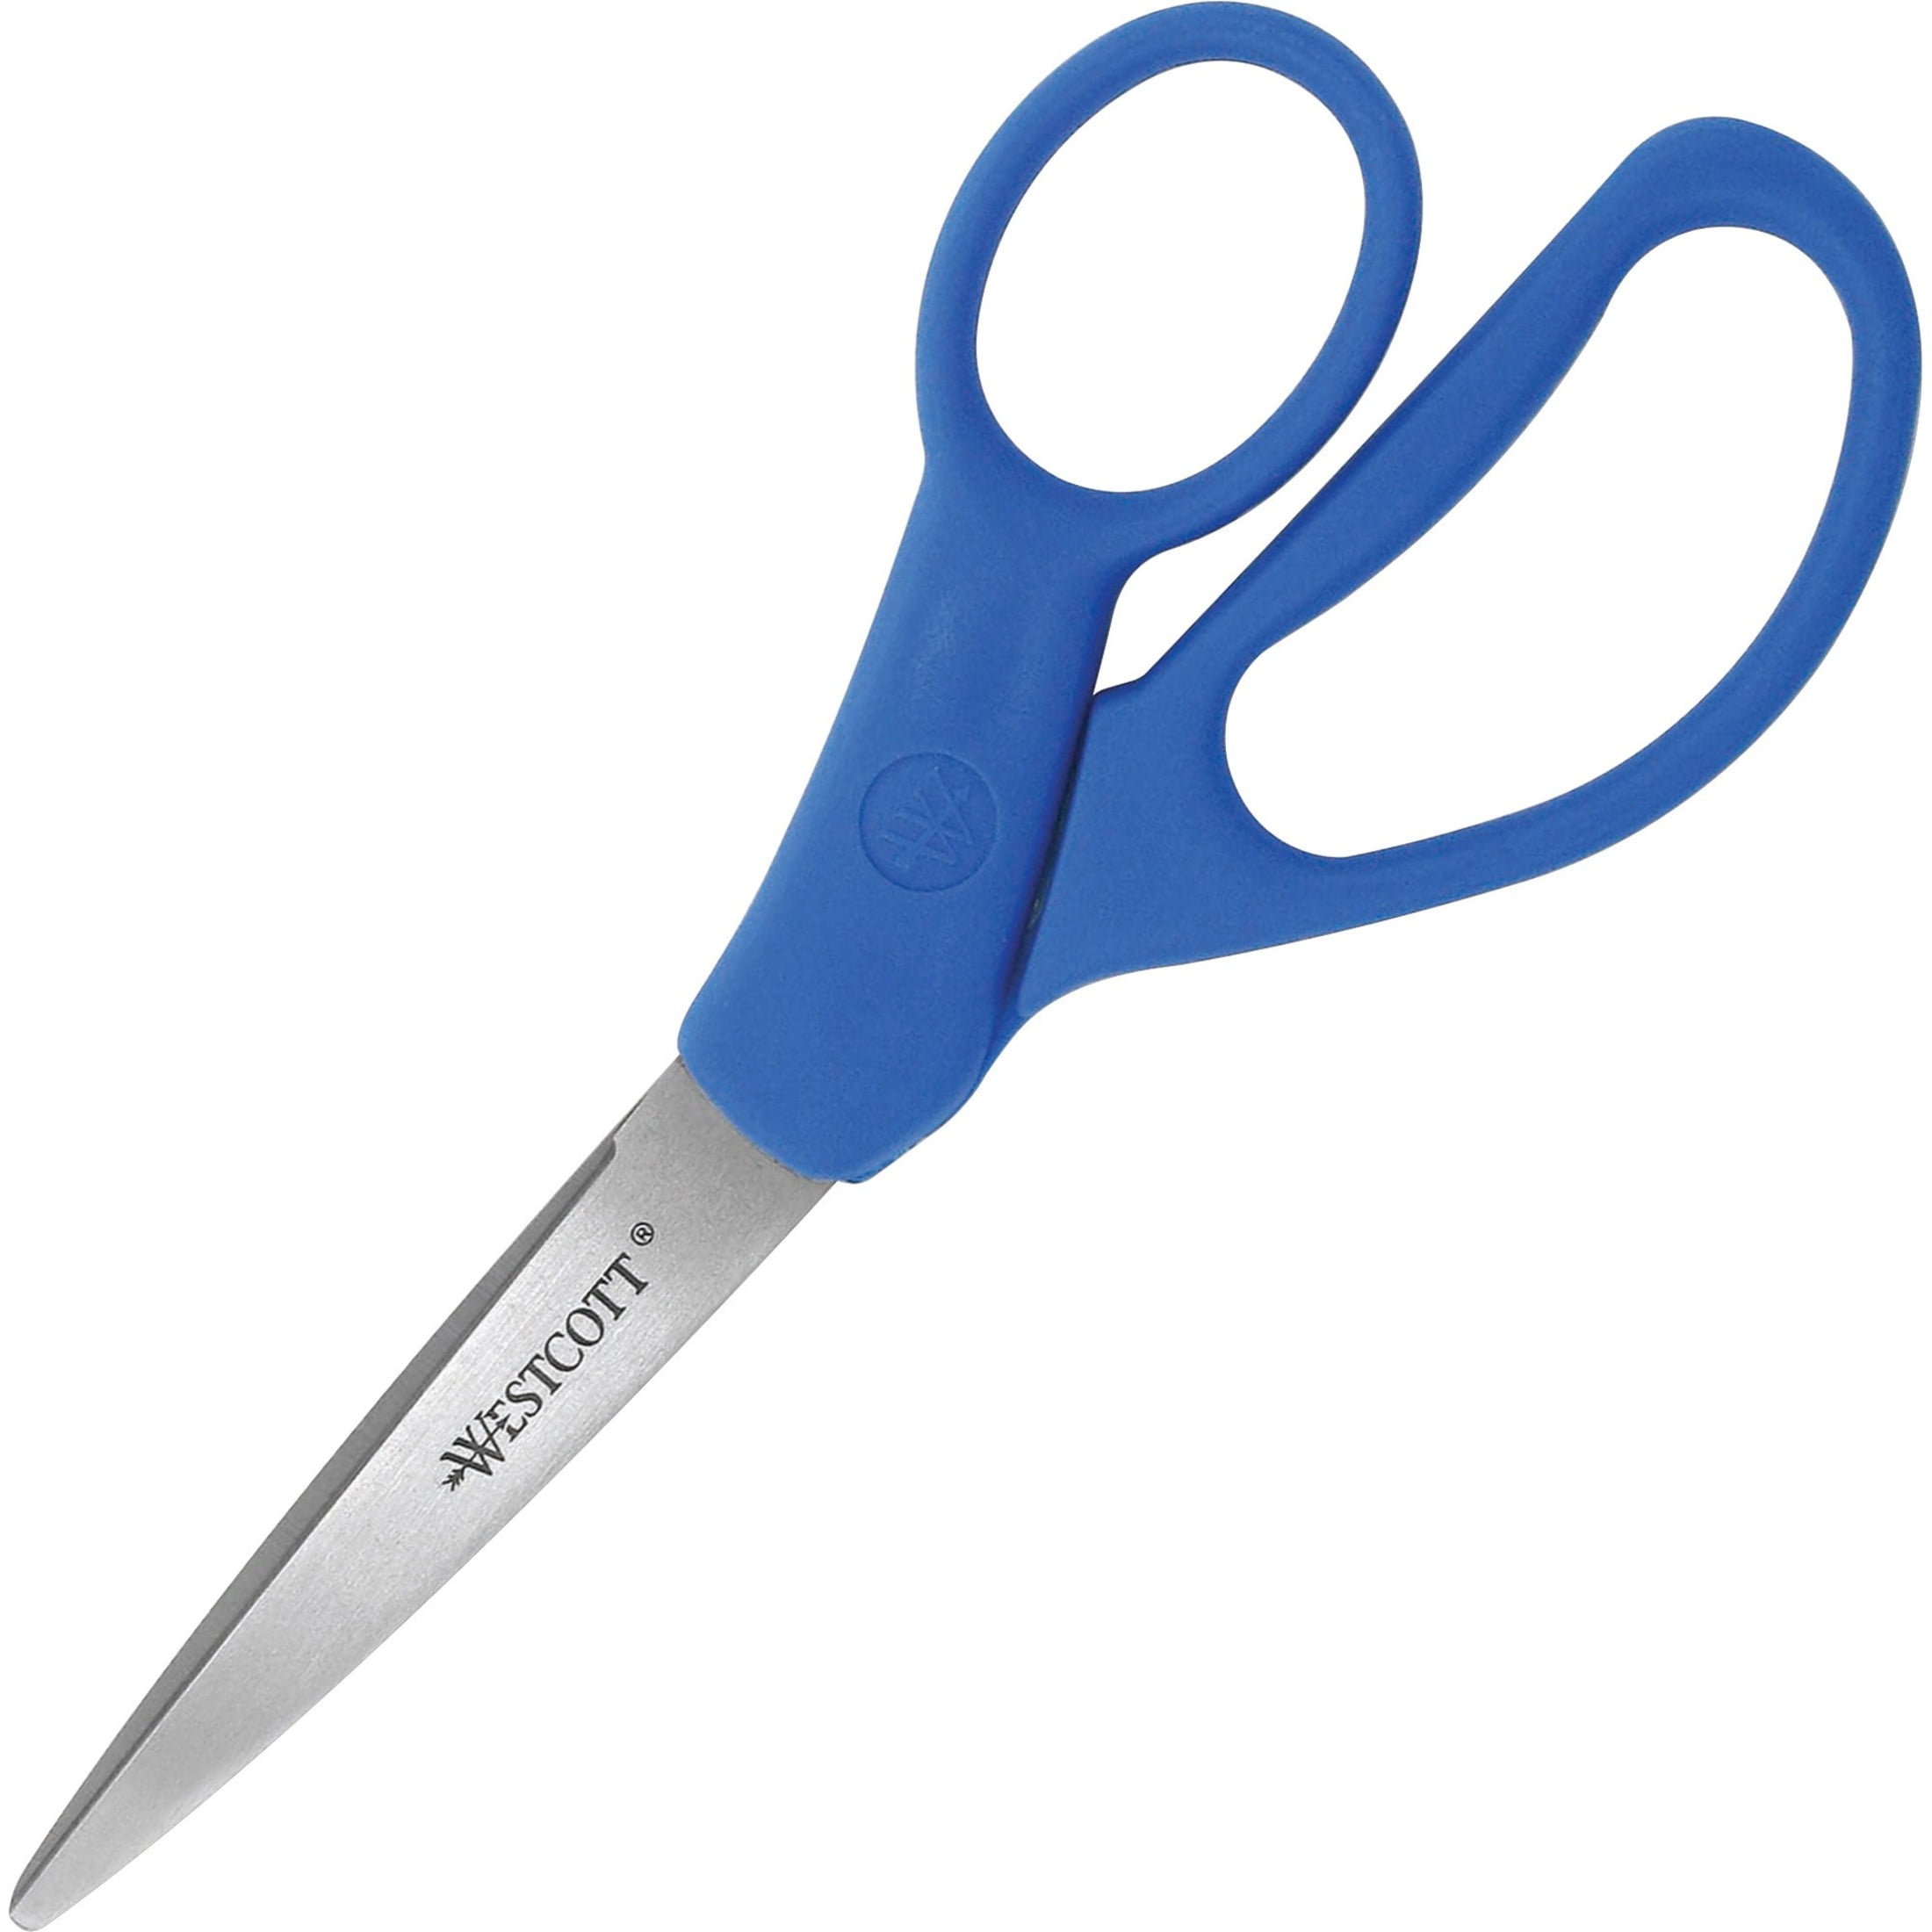 ZekPro Scissors for School - 9 Pack, Premium Stainless Steel